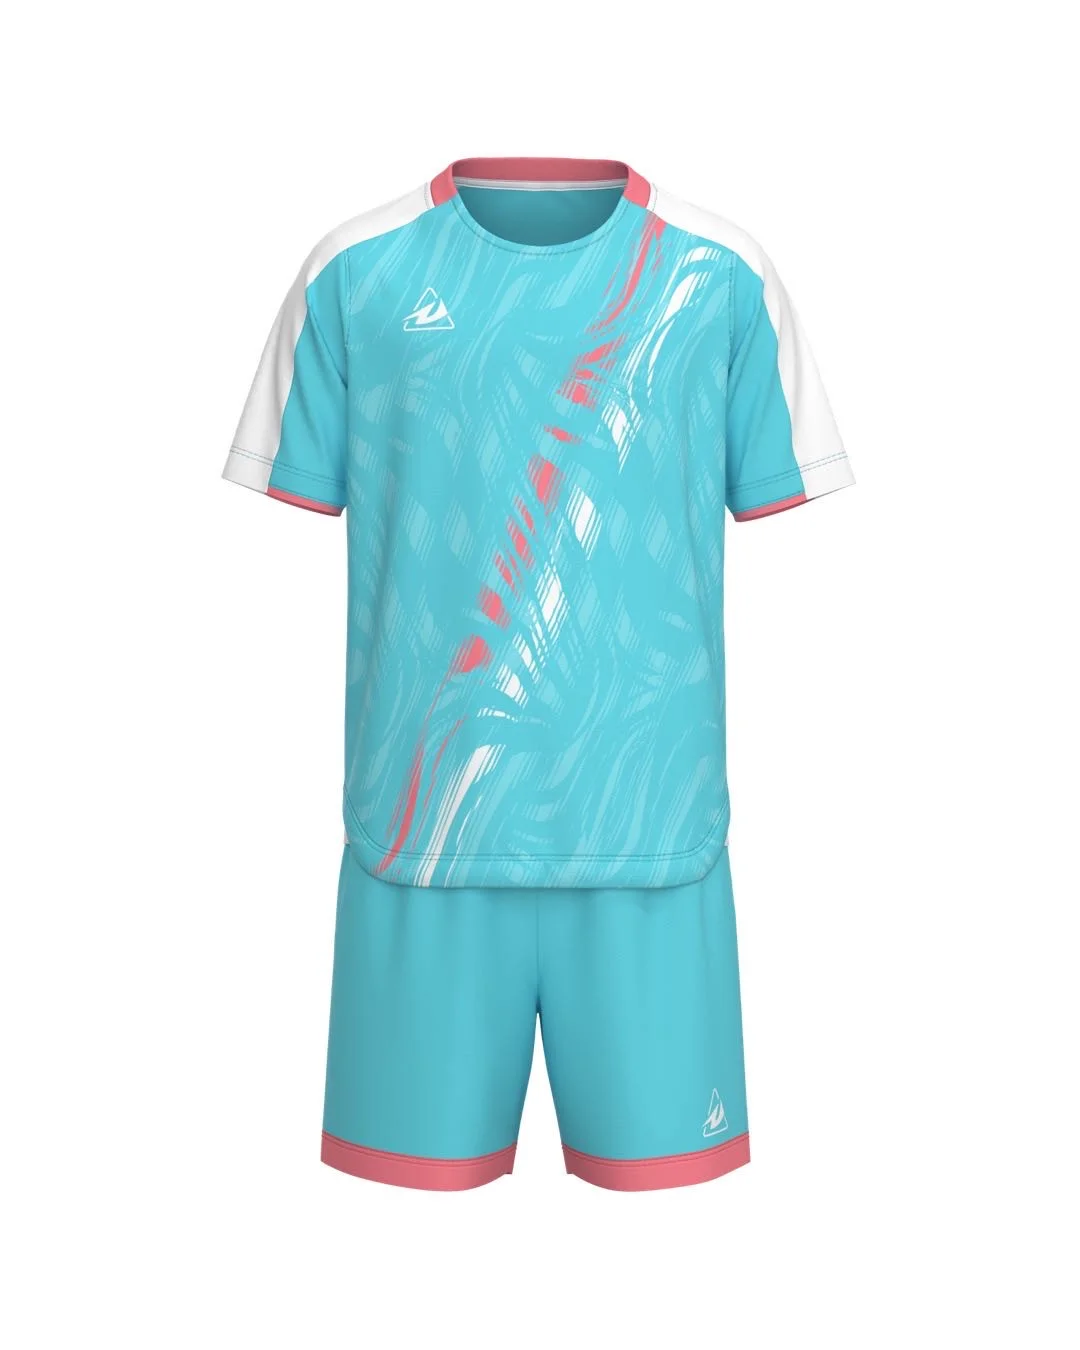 Jersey Design — Uni-Formity: Kit Design — Protagonist Soccer